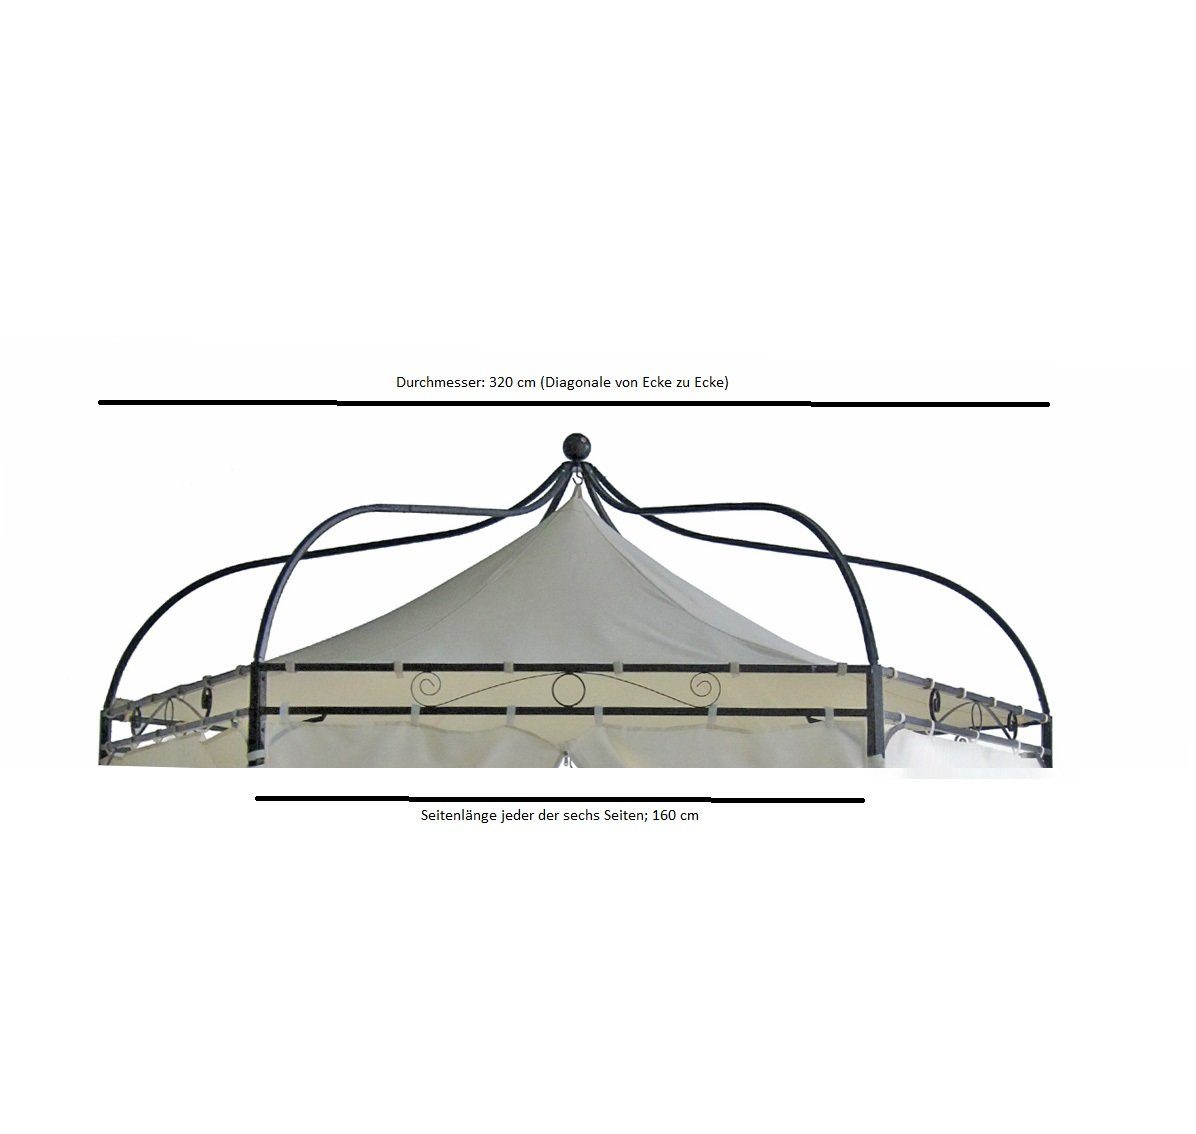 DEGAMO Pavillonersatzdach »MODENA«, 6-eckig 320cm Durchmesser, Farbe ecru,  wasserdicht